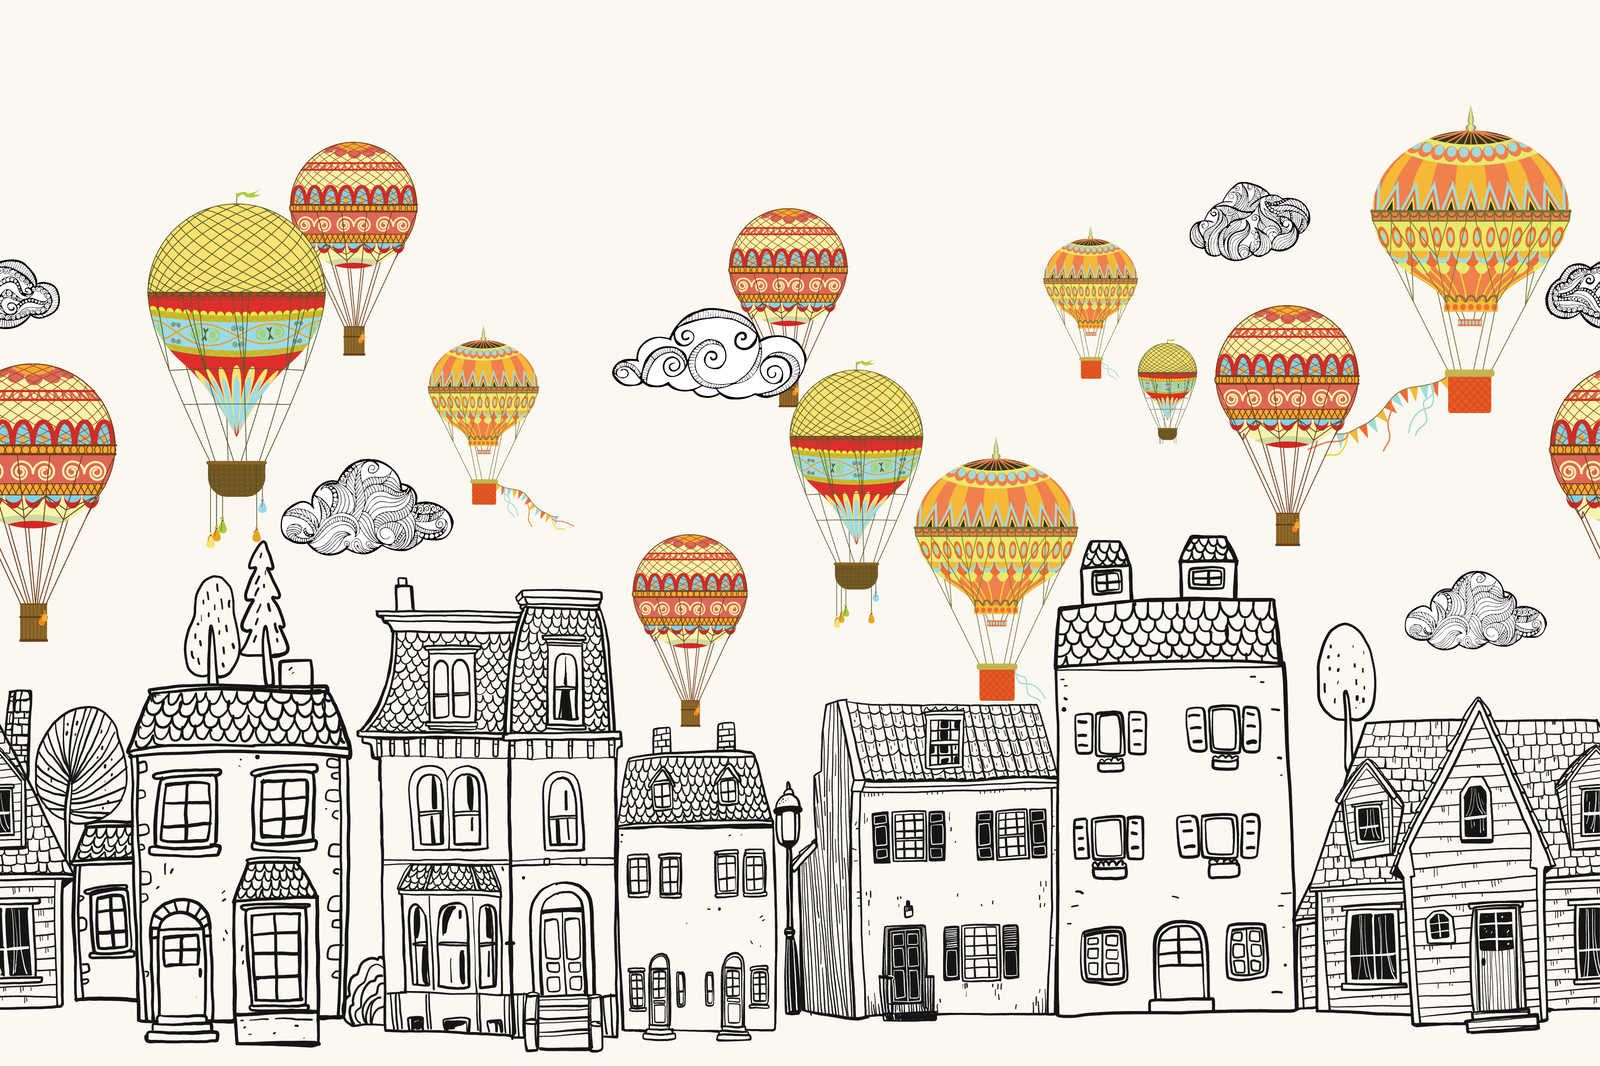             Leinwand Kleinstadt mit Heißluftballoons – 90 cm x 60 cm
        